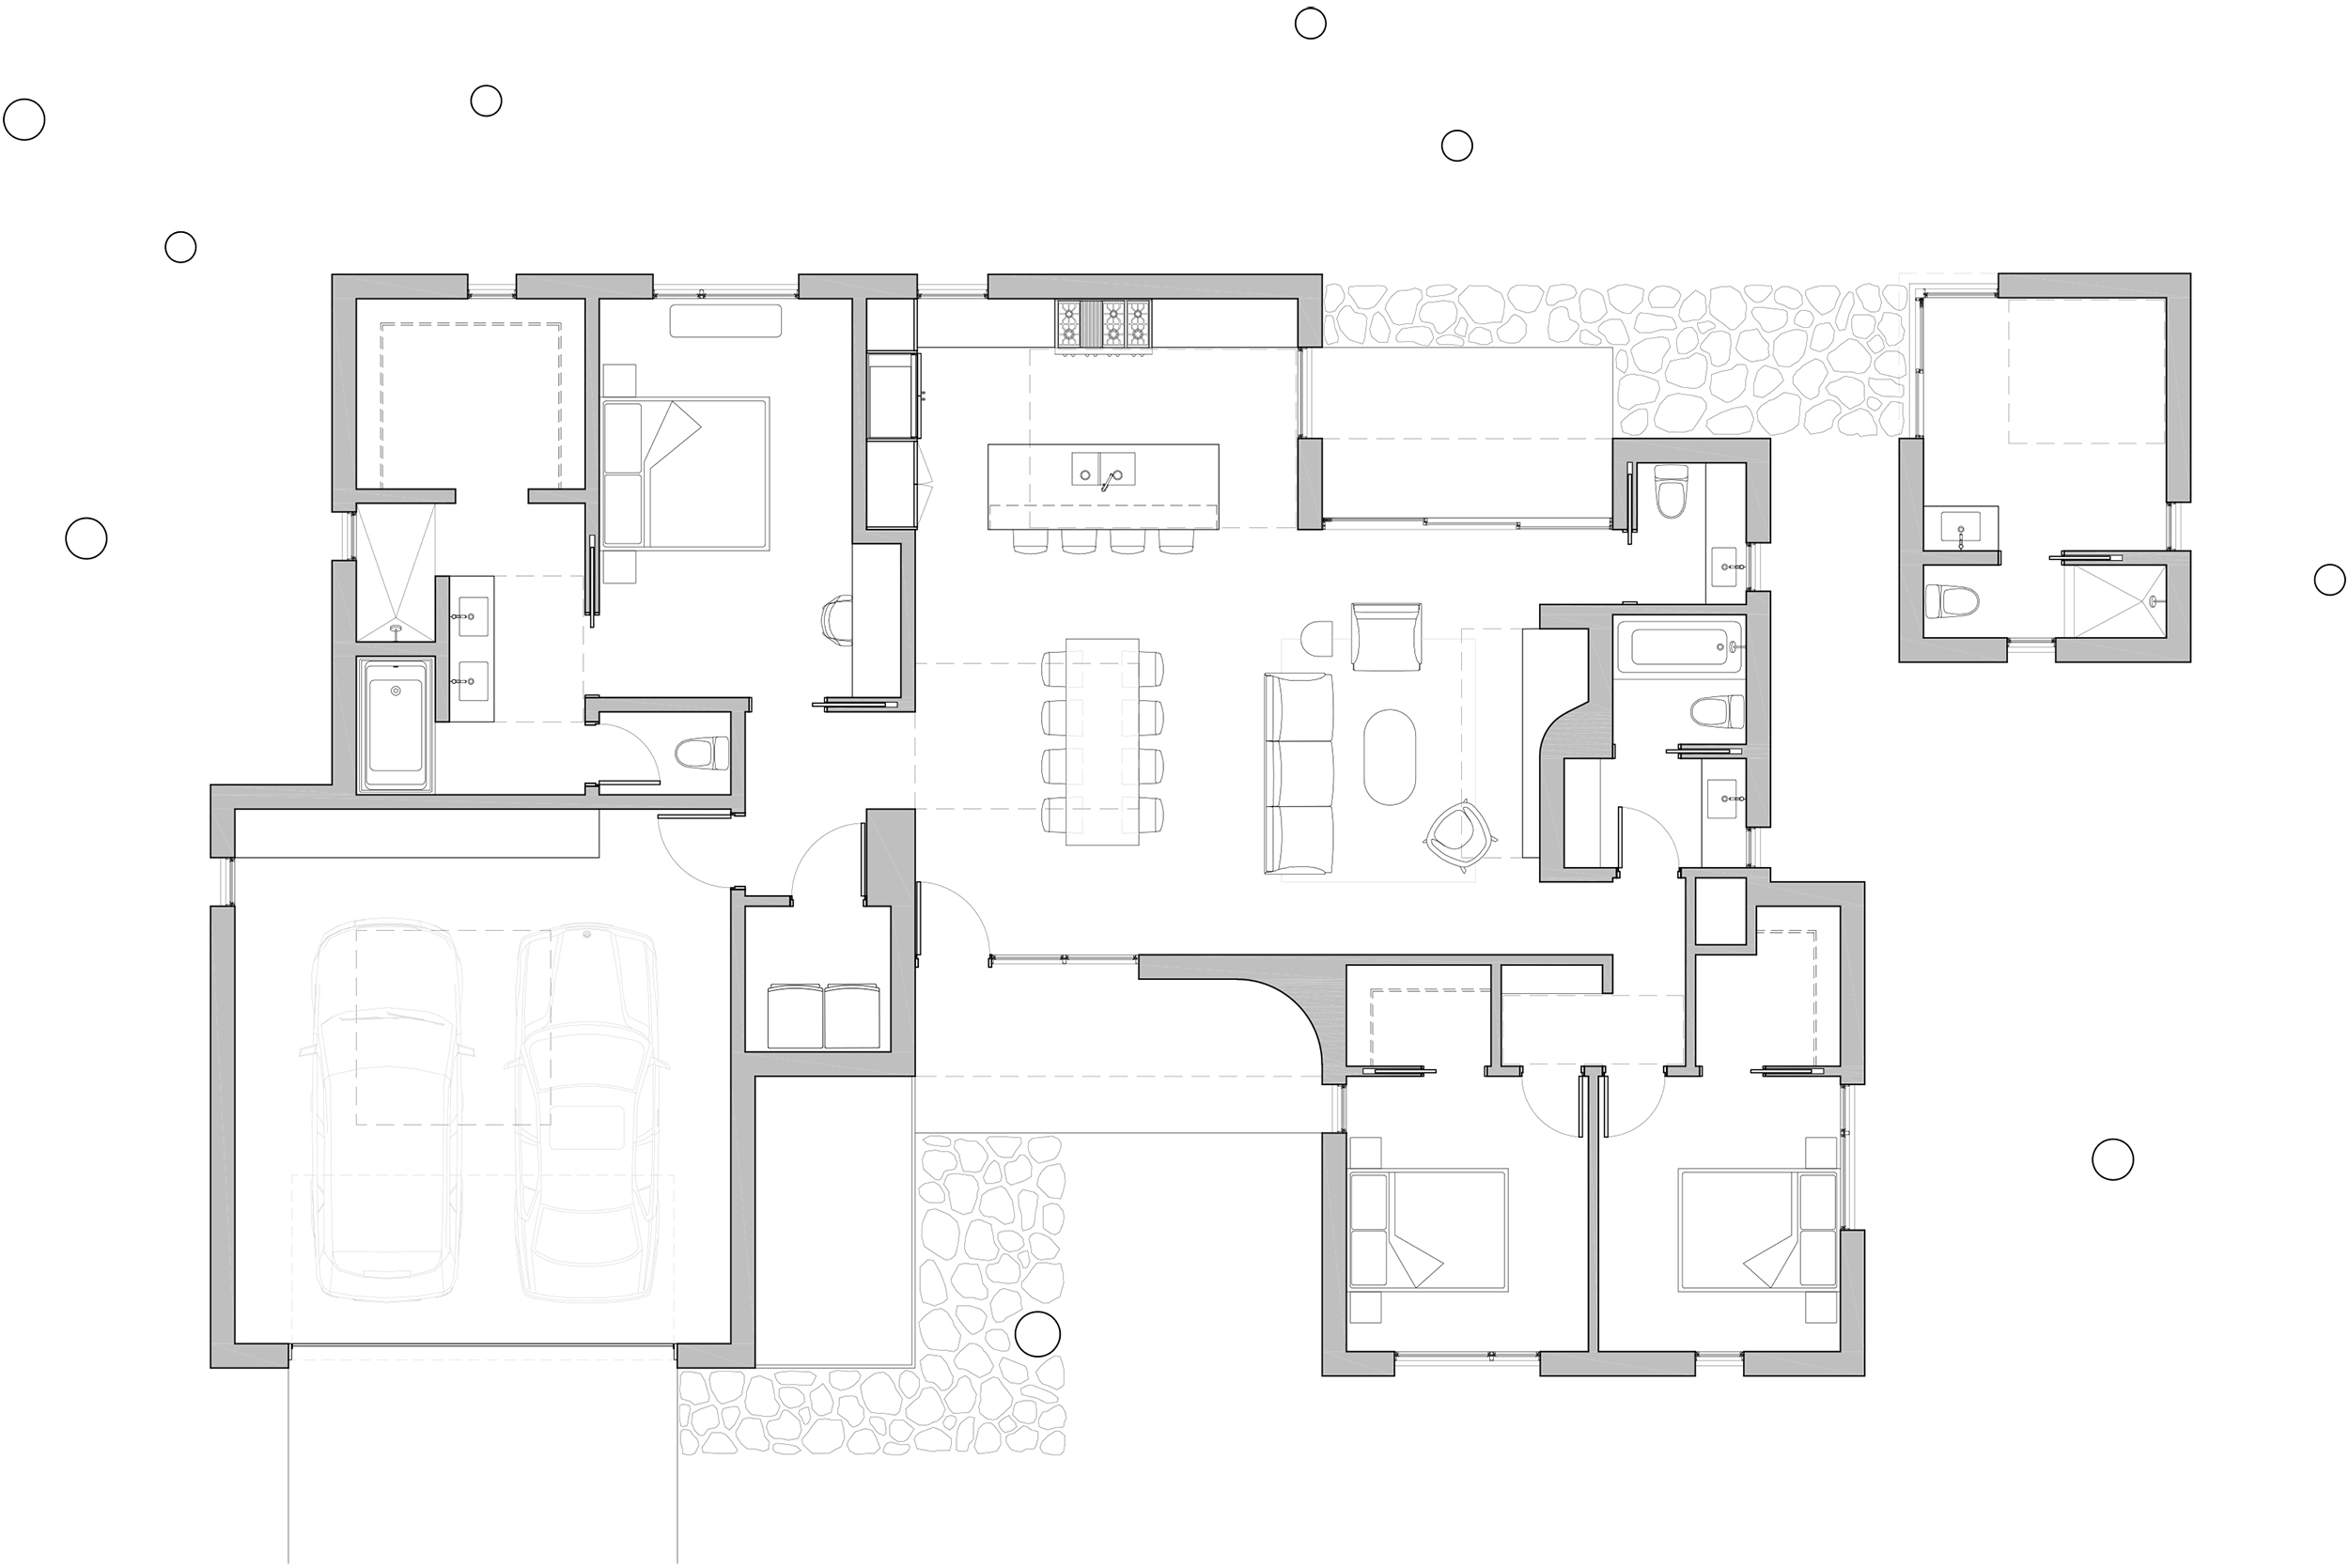 190820_Wilshire House - Plan Diagram 01.jpg